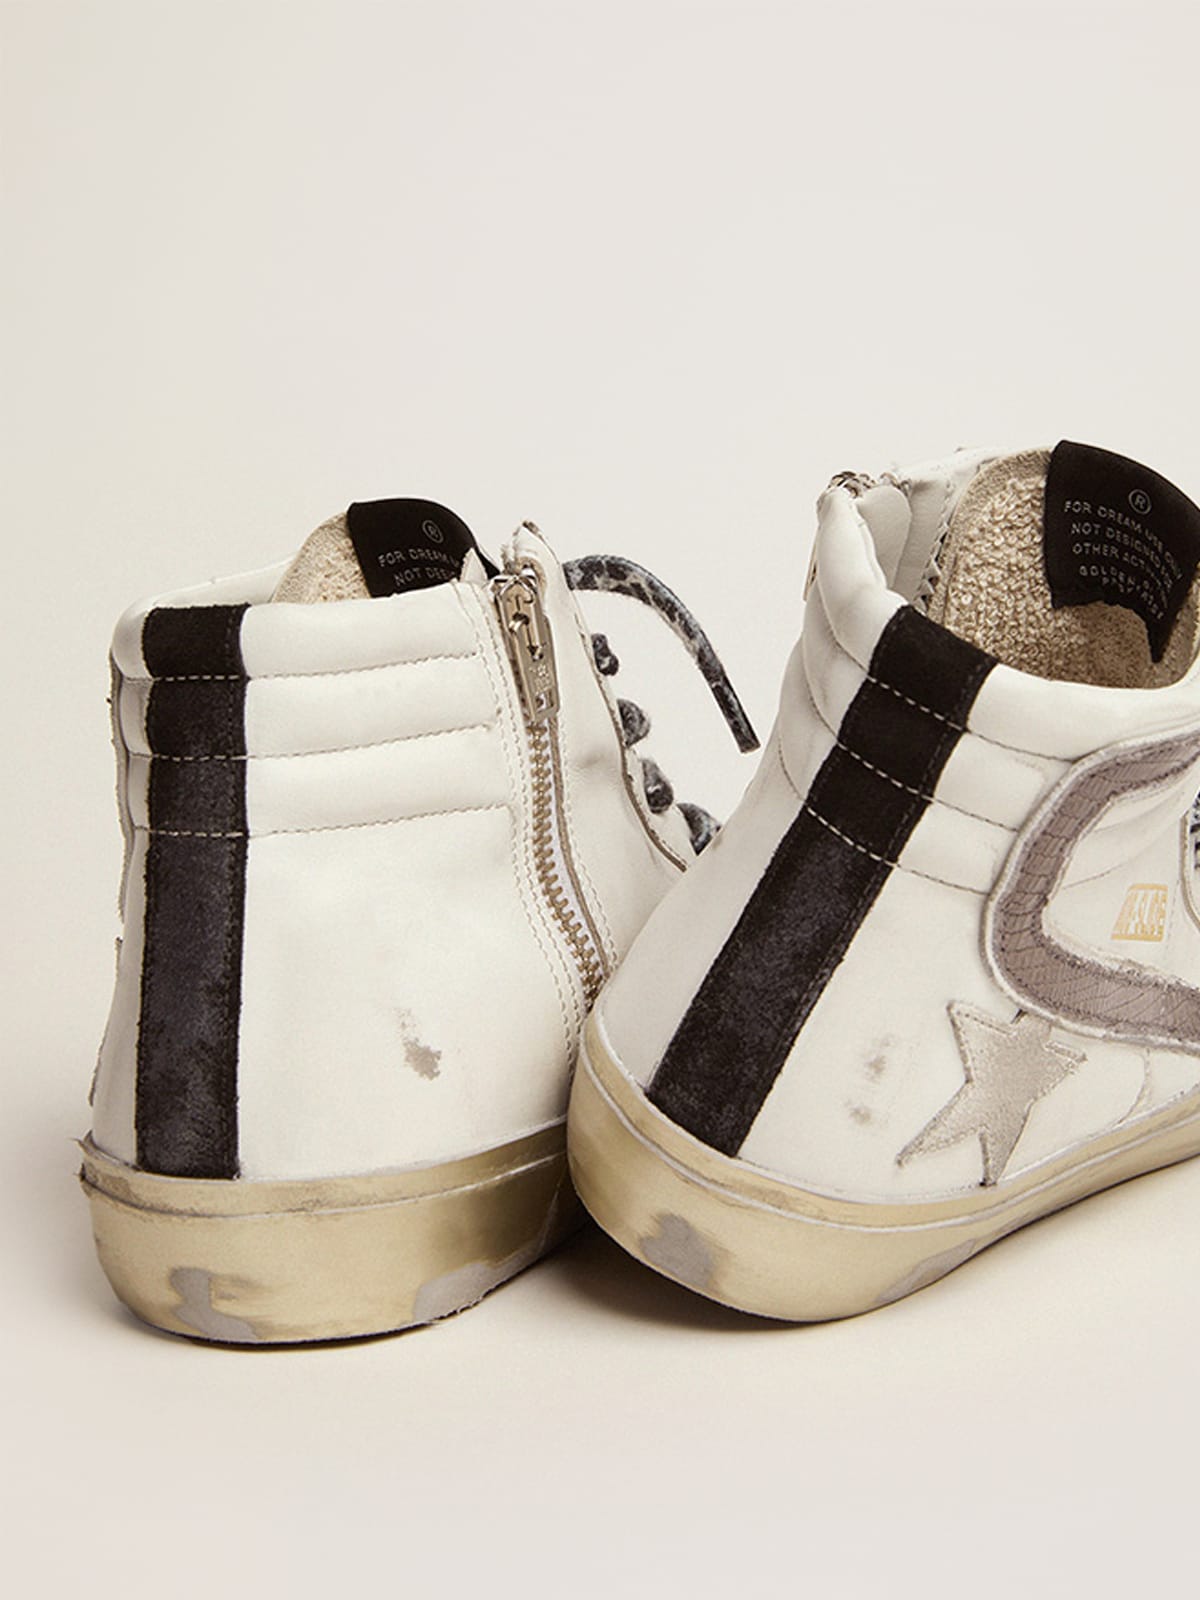 Golden Goose - Sneaker Slide mit weißem Raulederstern und taubengraues Lederkomma mit Eidechsenprägung in 